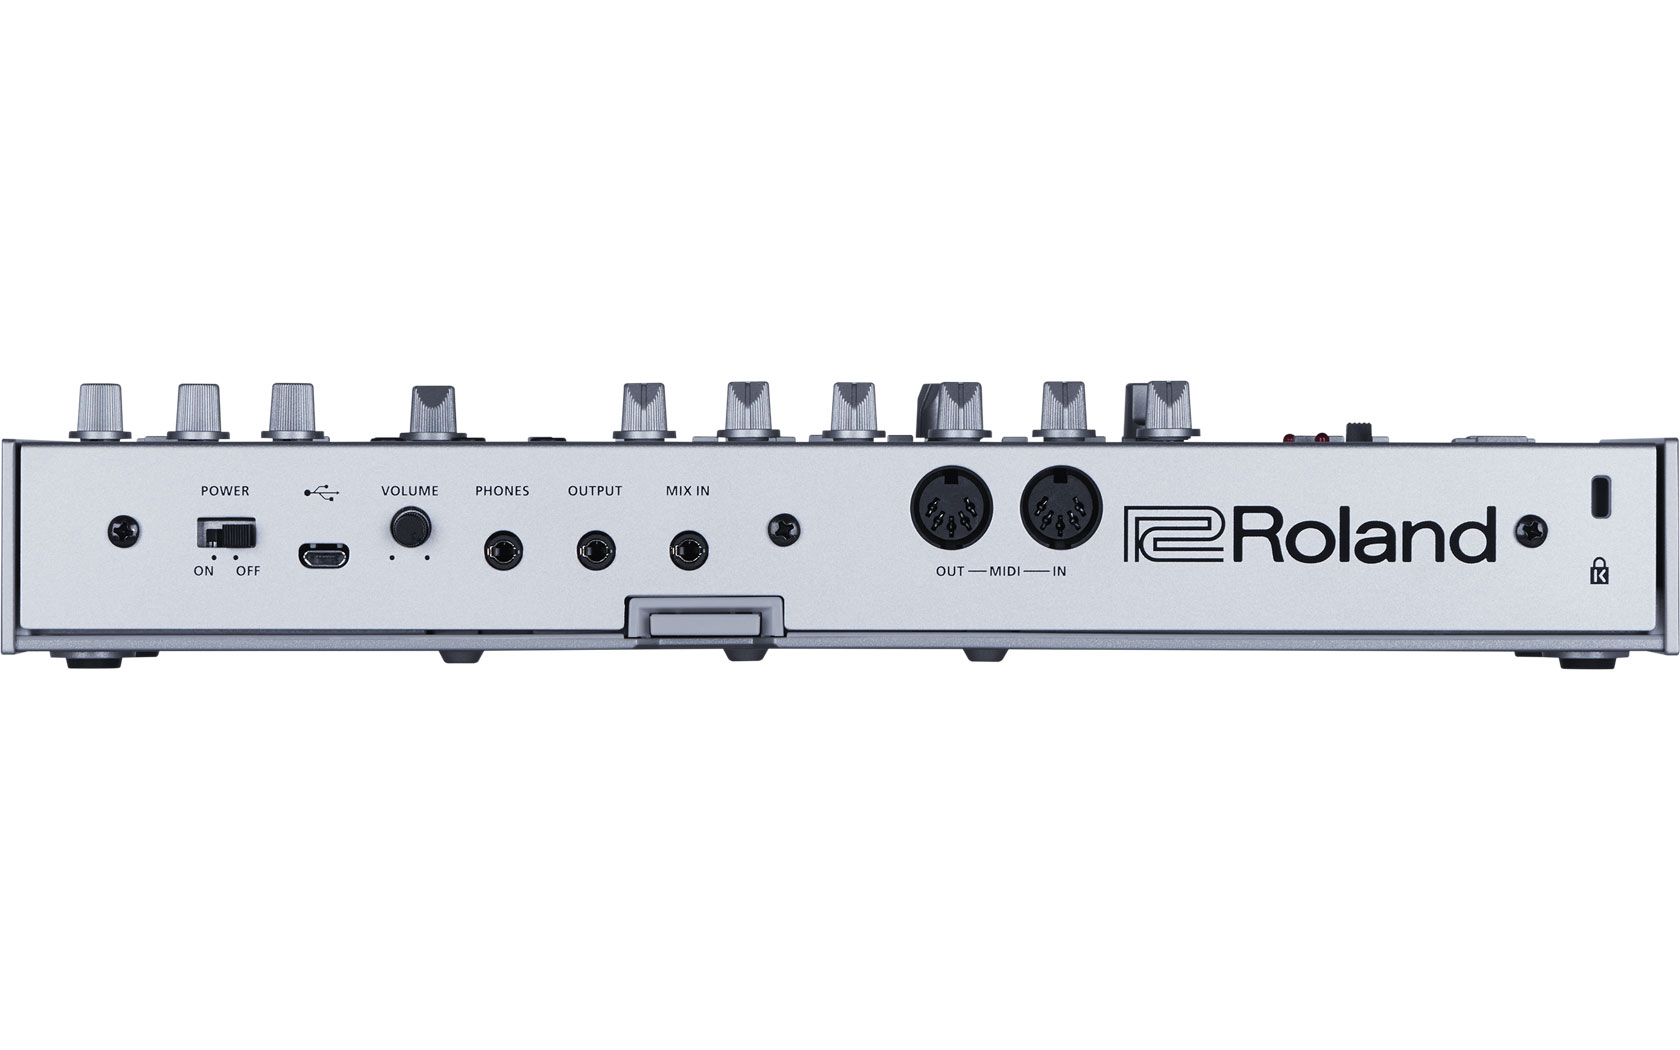 Басовая линия. Roland TB-303. Роланд TB 03. Синтезаторы Roland Bass line. Синтезатор баса Rolland TB 03.